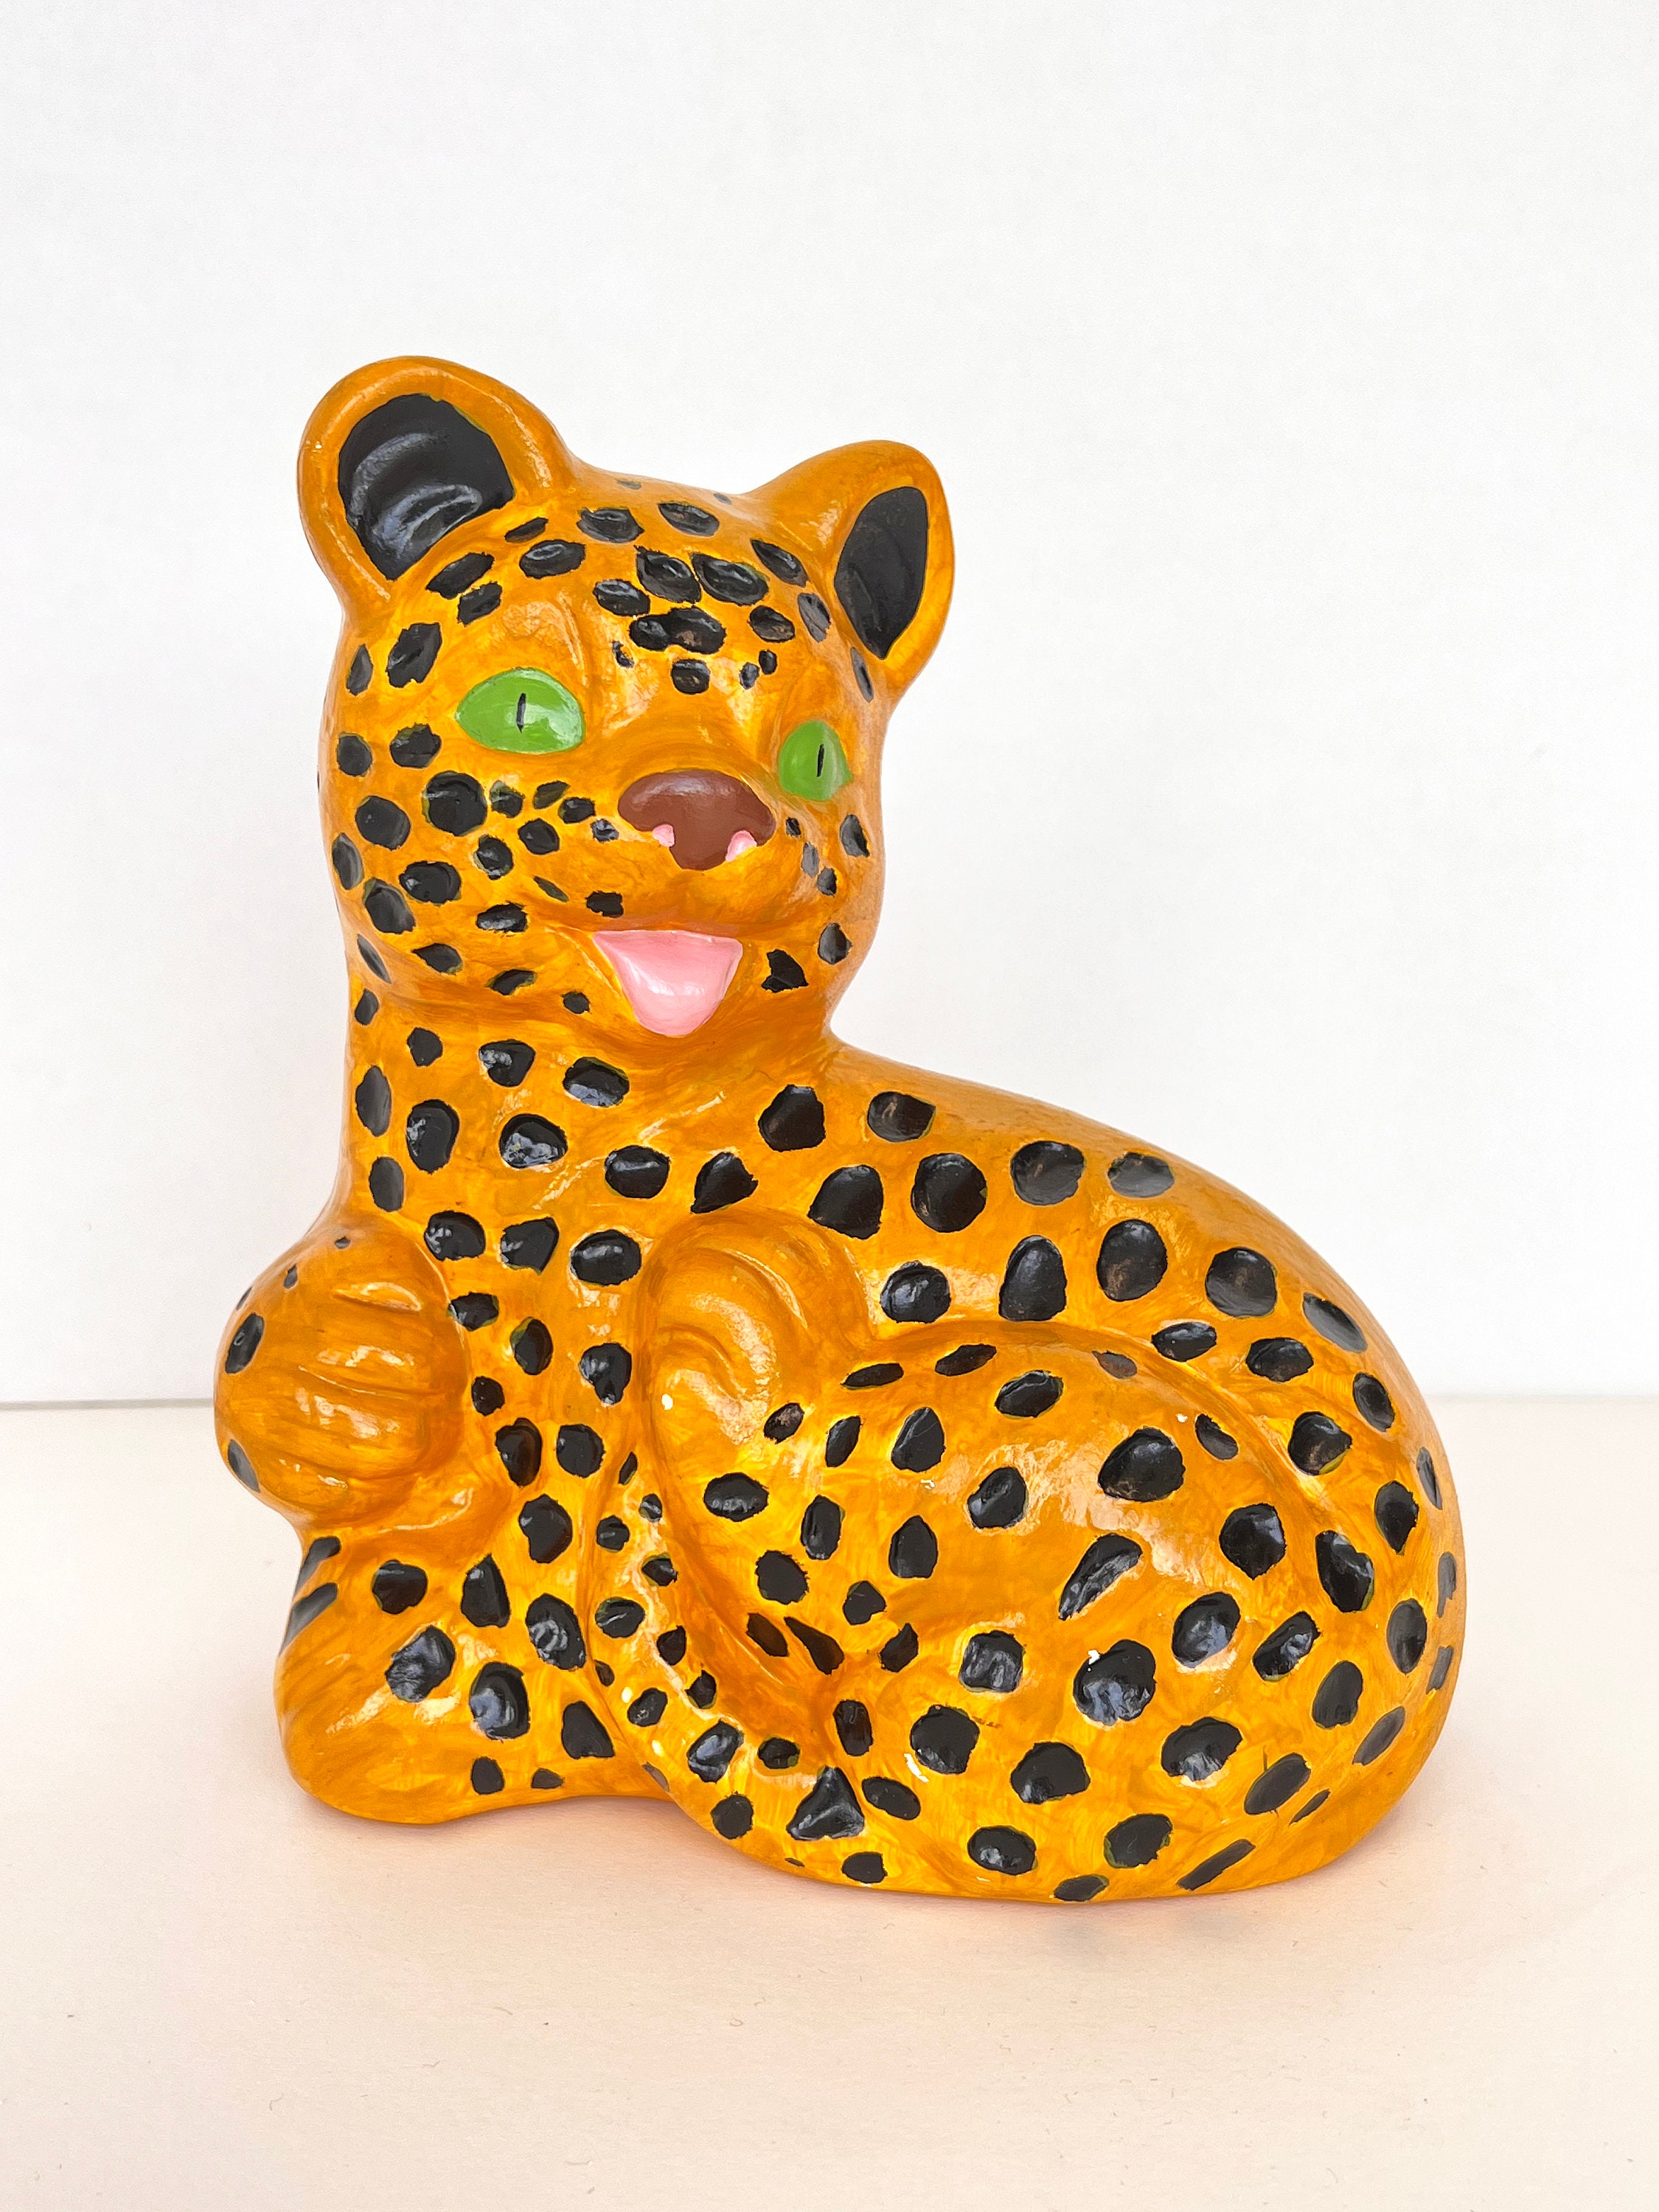 Leopard Cub Figurine -  Canada